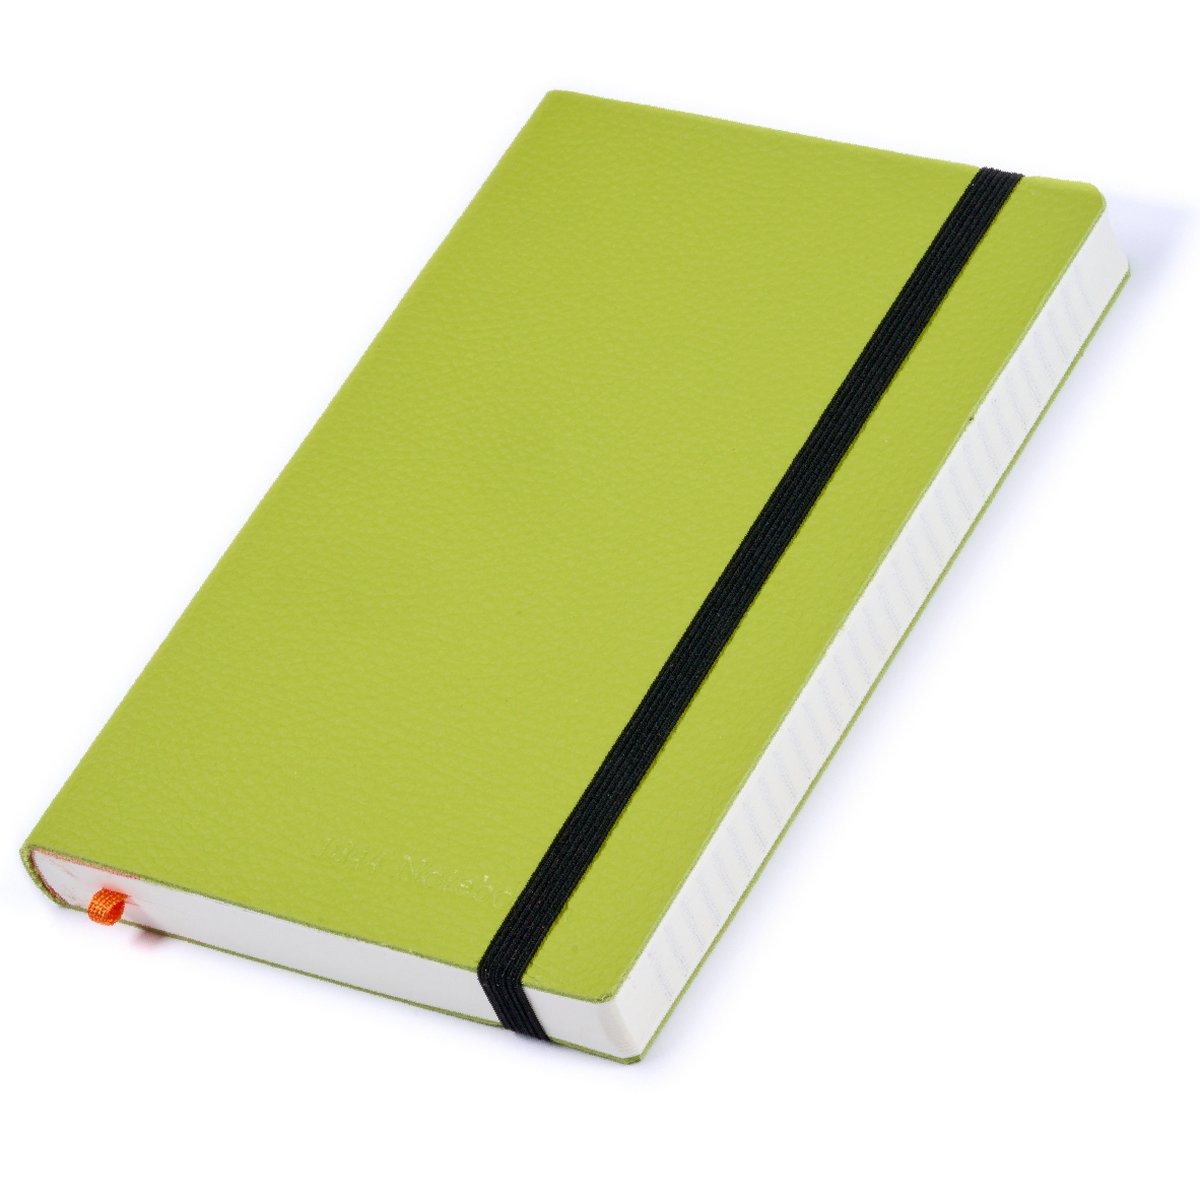 Notitieboek - Notebook A5 - Cadeau voor man - Cadeau voor vrouw - Notitieboekje - Handgemaakt van leer - Schrijfblok - Notebook - Notitieblok - Faire Green - 1844 Notebooks